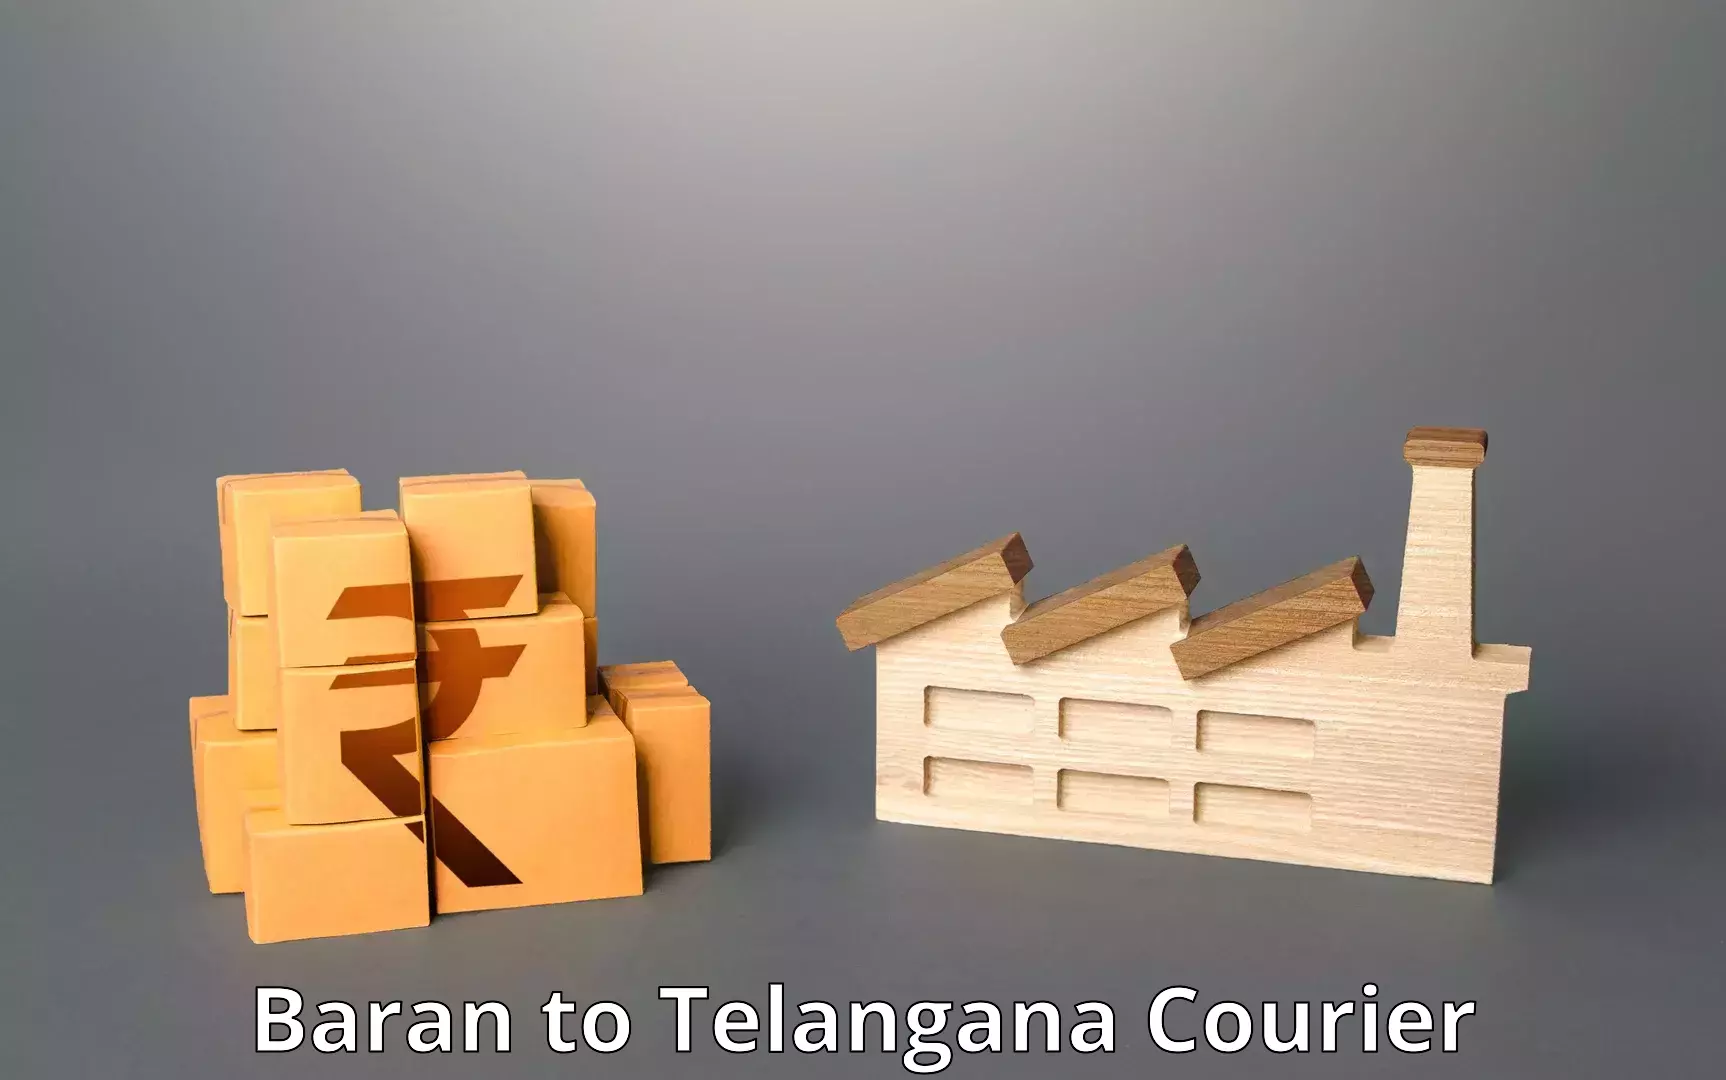 User-friendly courier app Baran to Jannaram